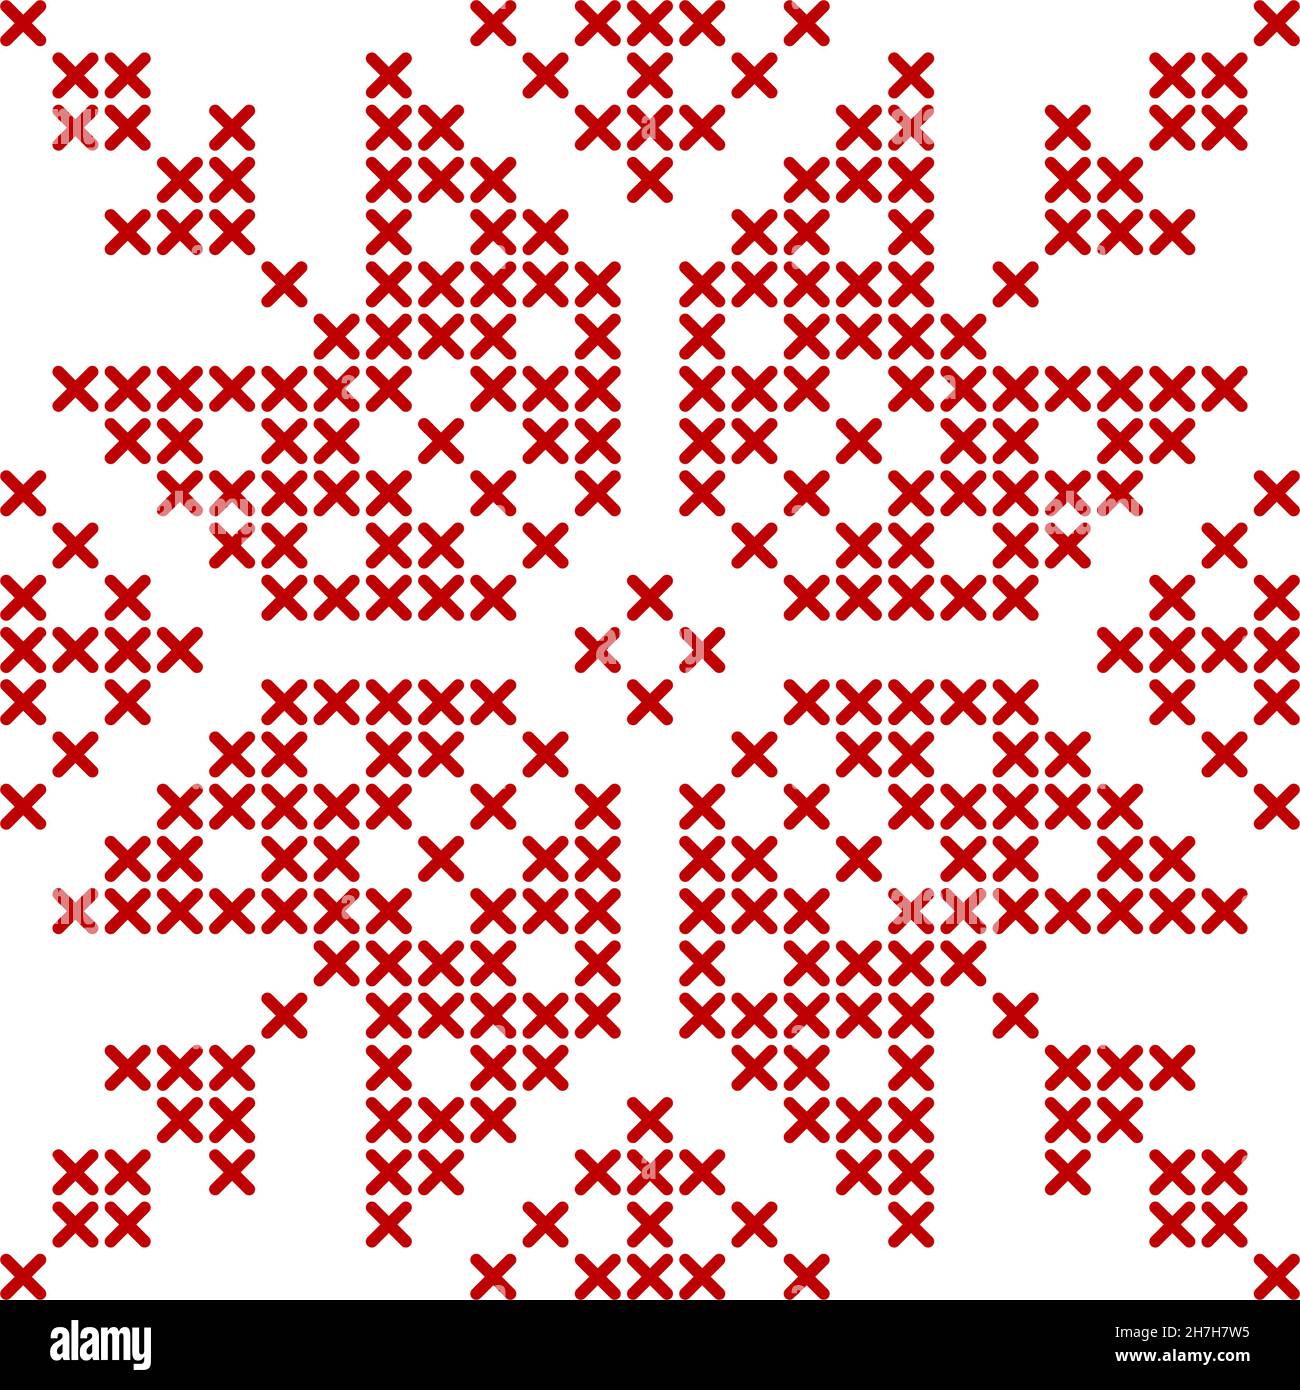 Skandinavisches Strickmuster. Geometrisches Rotwork-Ornament für Schneeflocken-Sternstickerei. Perfekt für Weihnachten Kreuzstich-Design. Vektordarstellung Stock Vektor